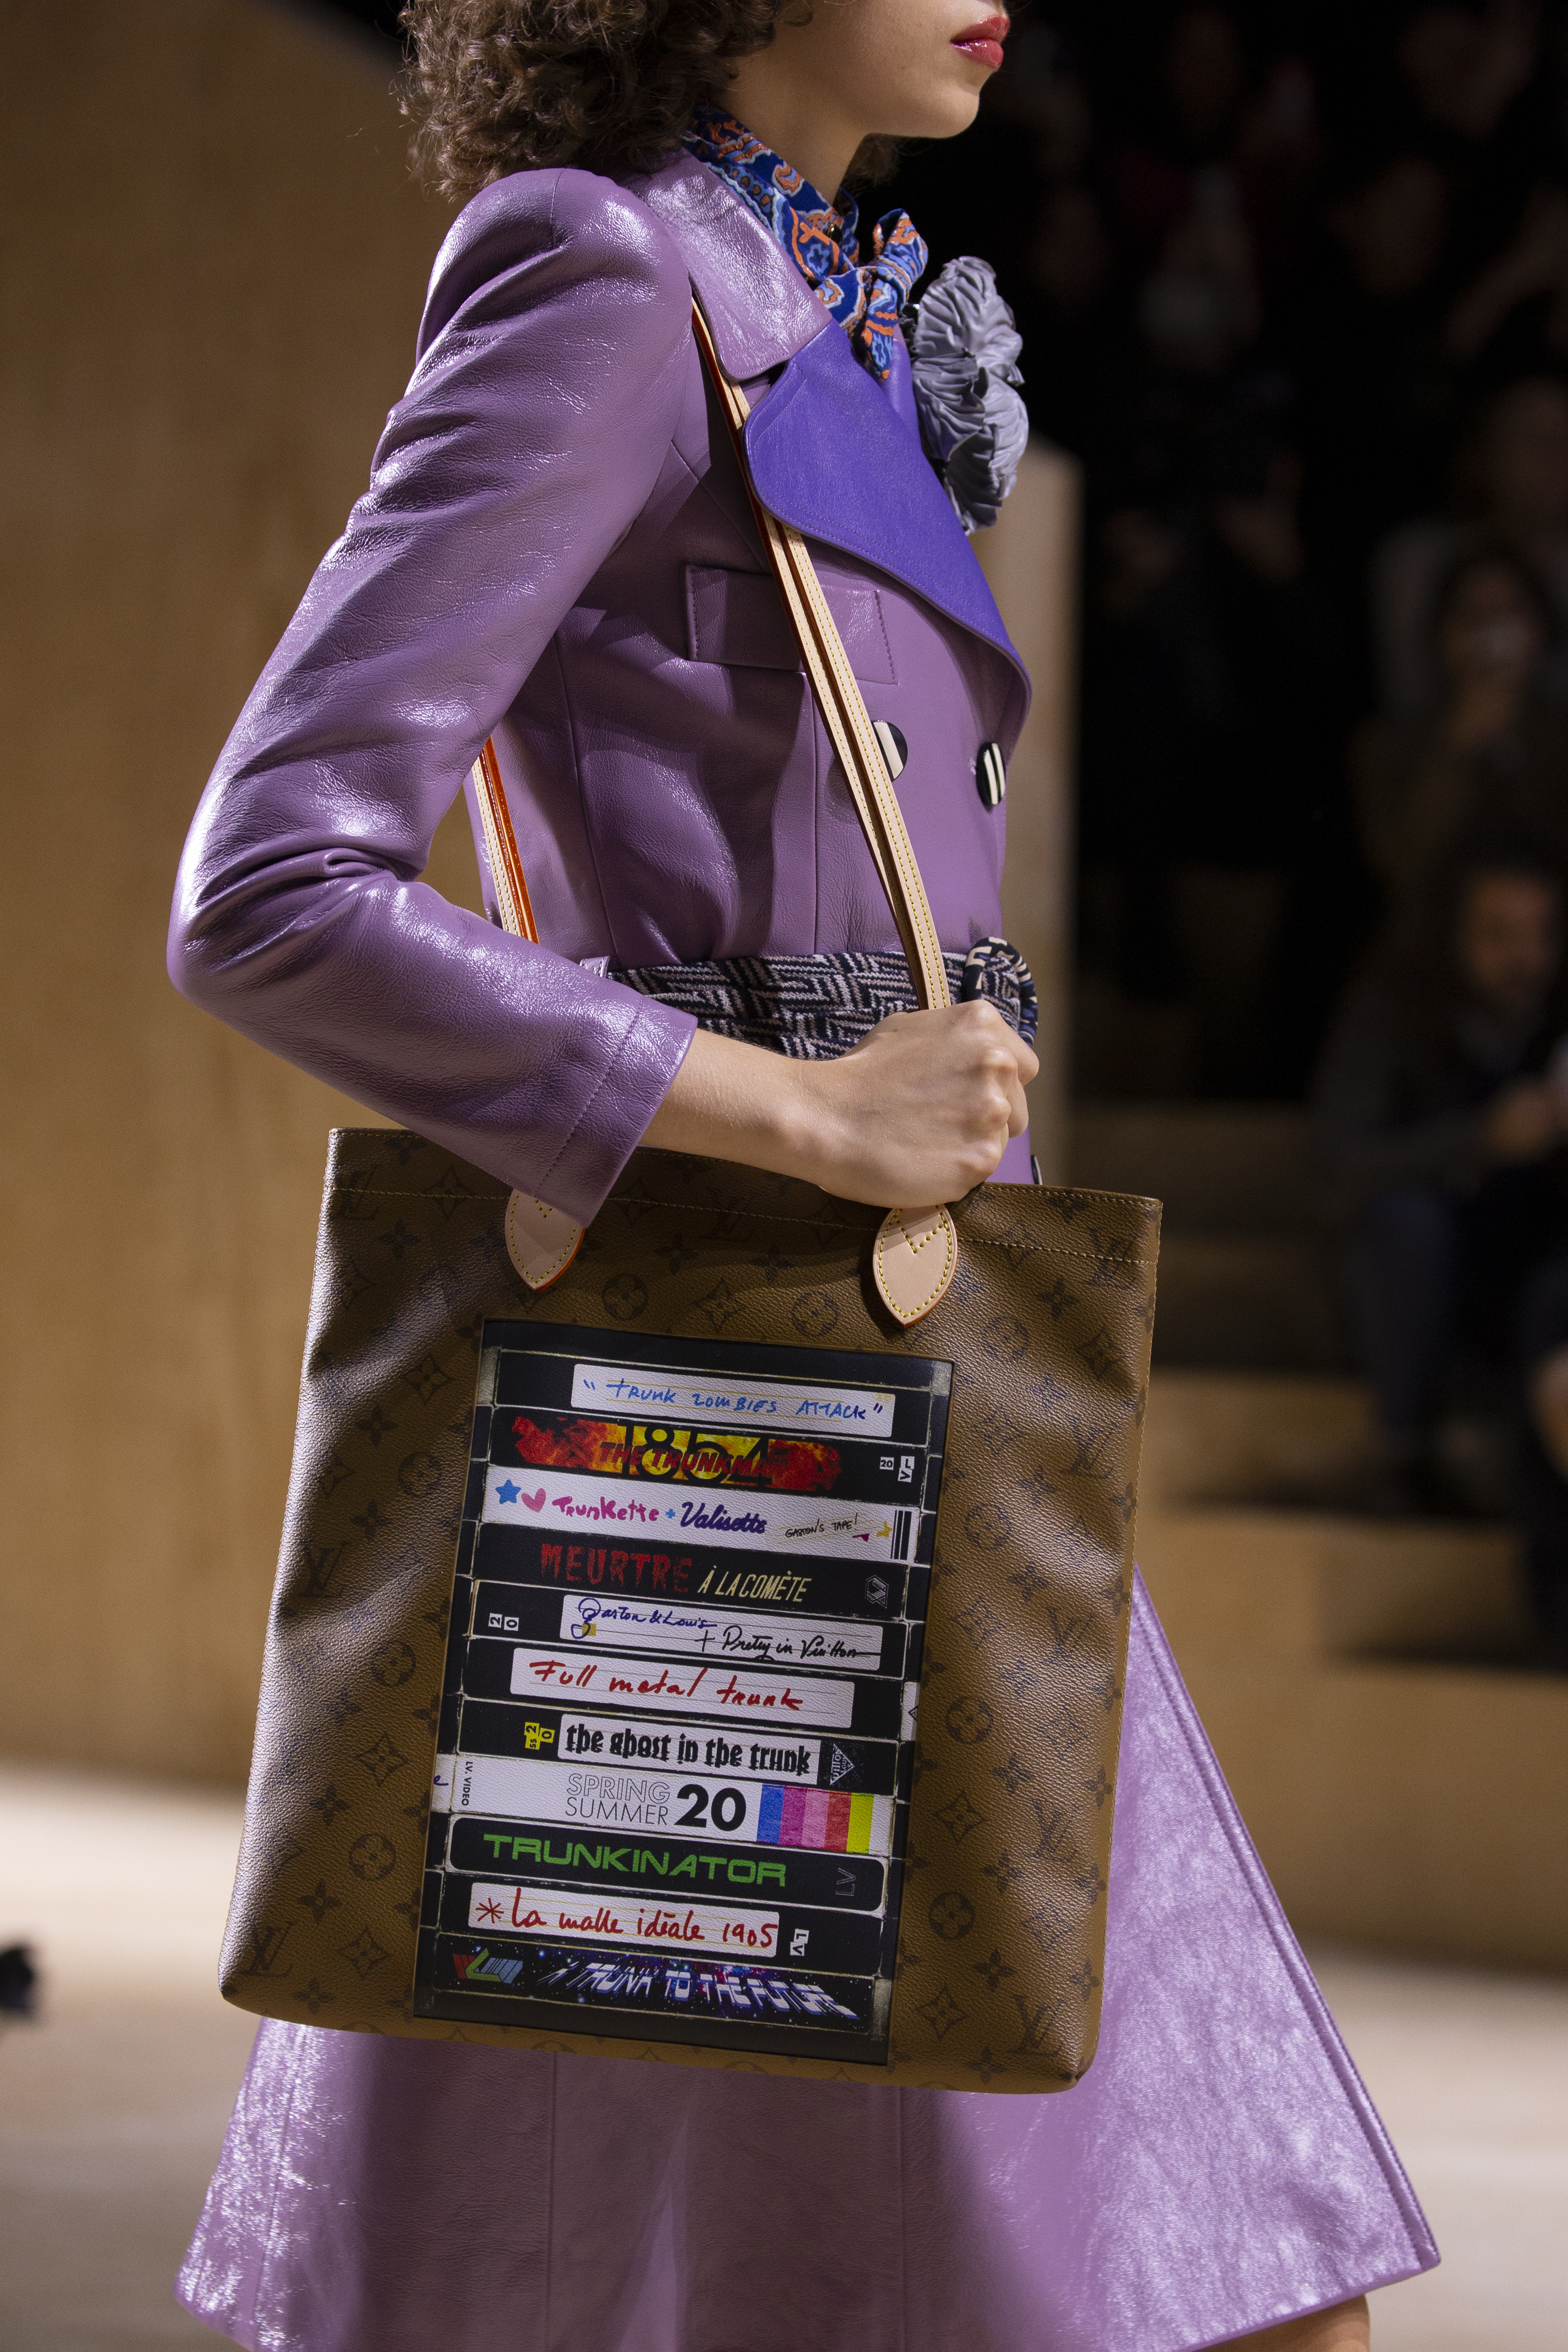 Zíperes e bolsas exageradas dominam desfile da Louis Vuitton em Paris